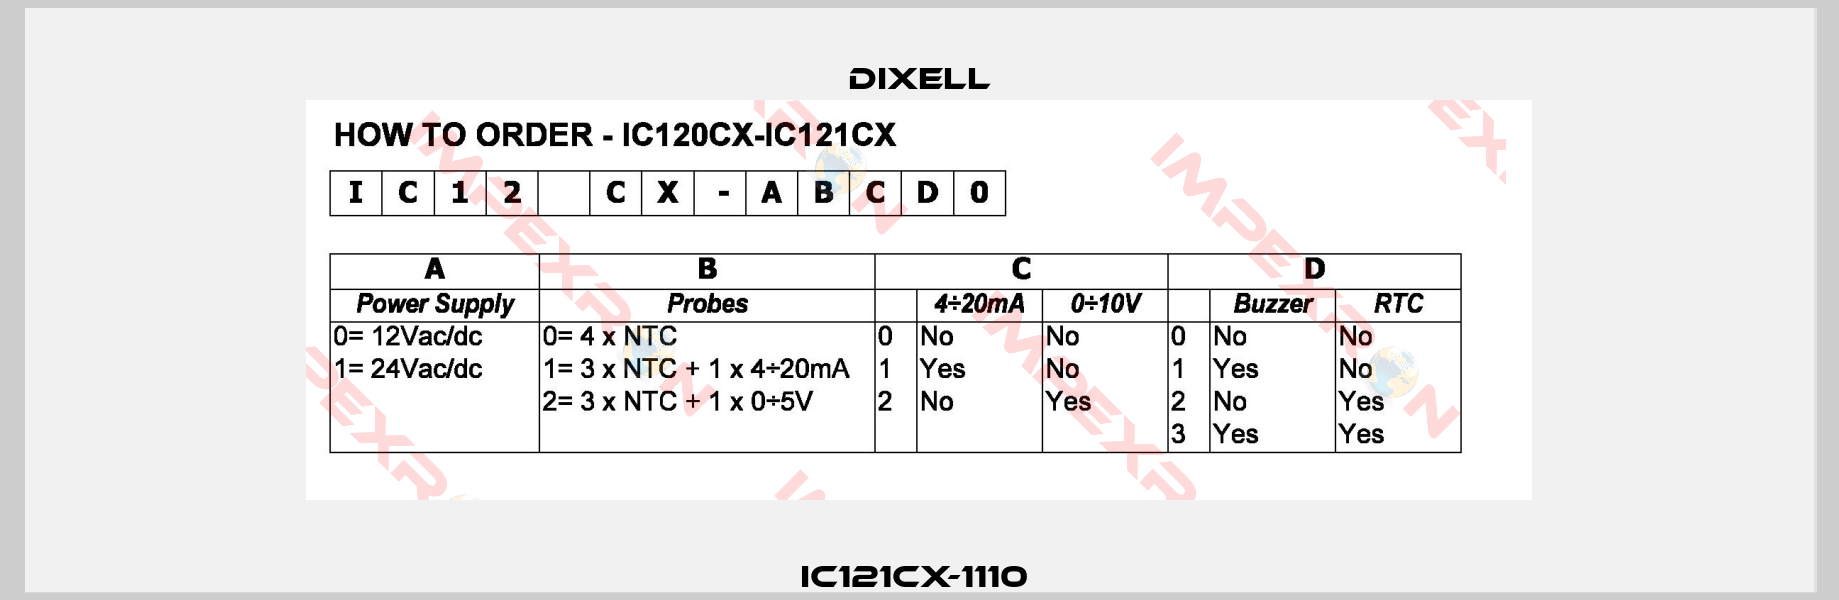 IC121CX-1110 -0